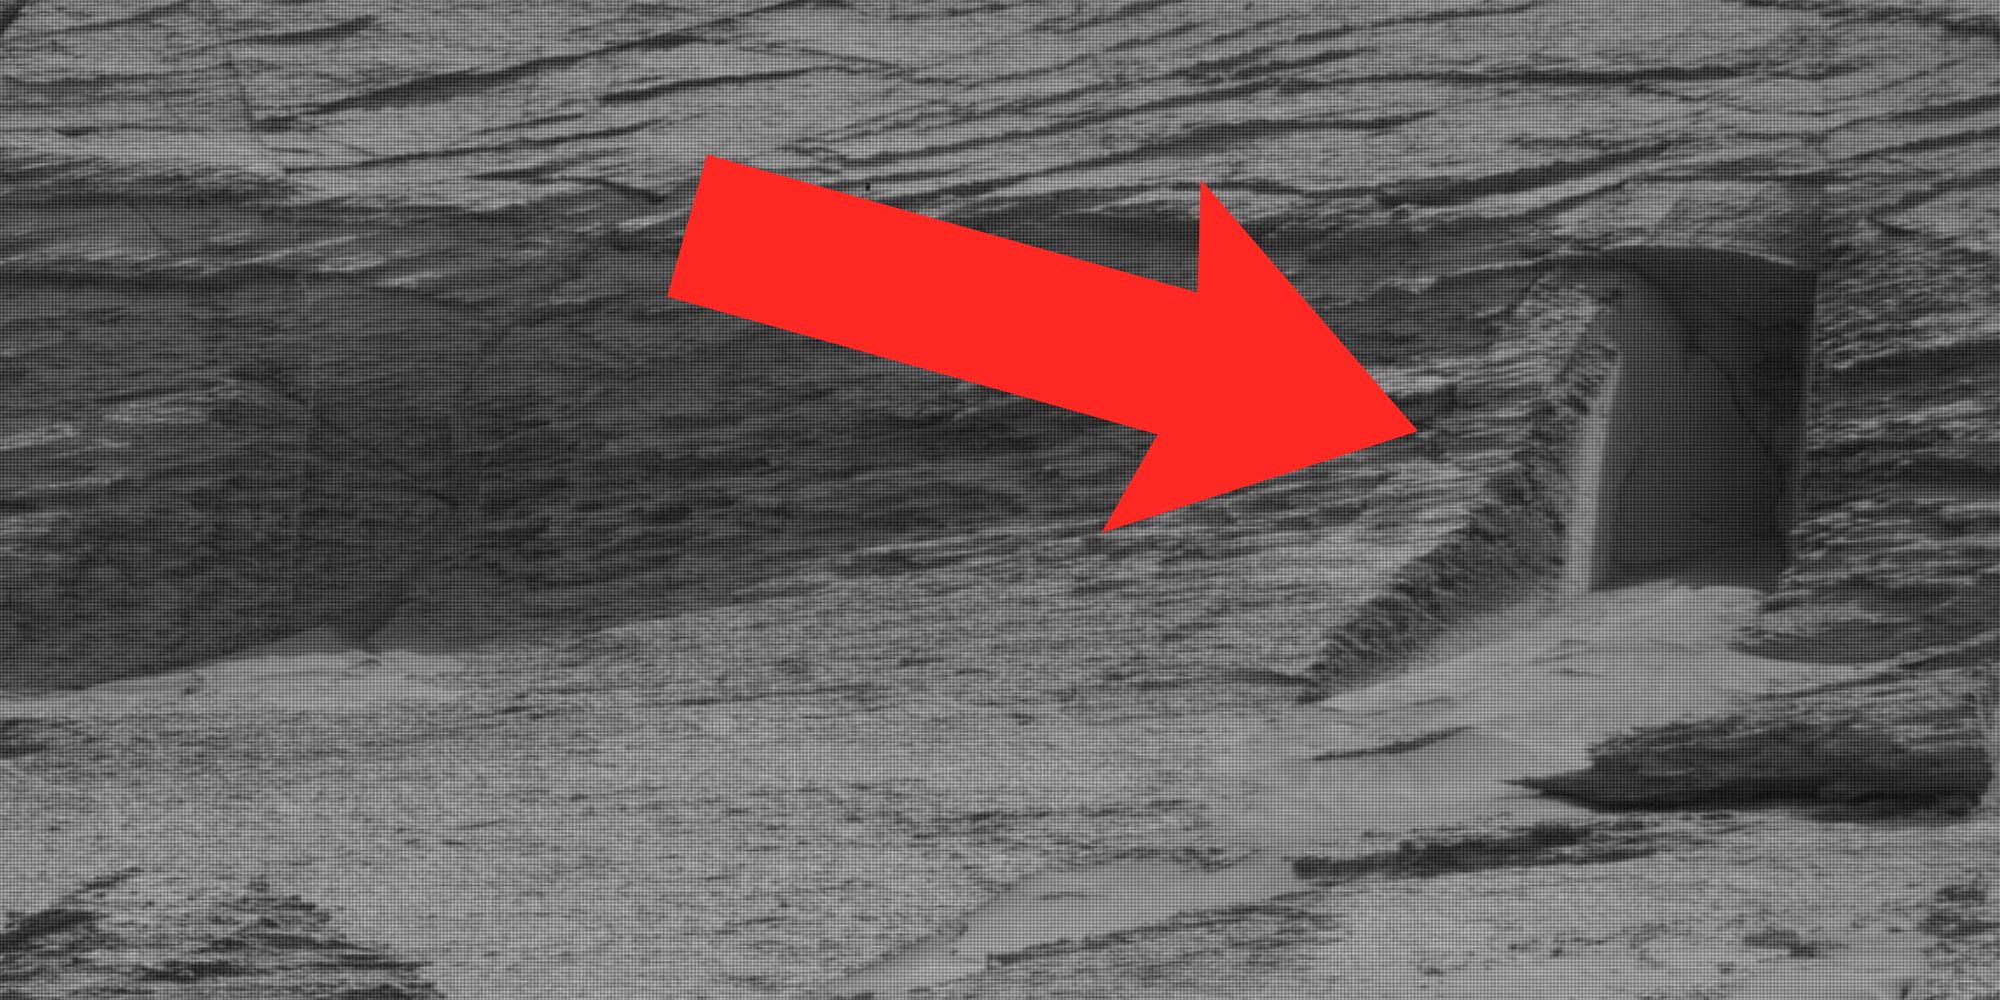 ¿El Mars Rover de la NASA realmente encontró una puerta en el planeta rojo?